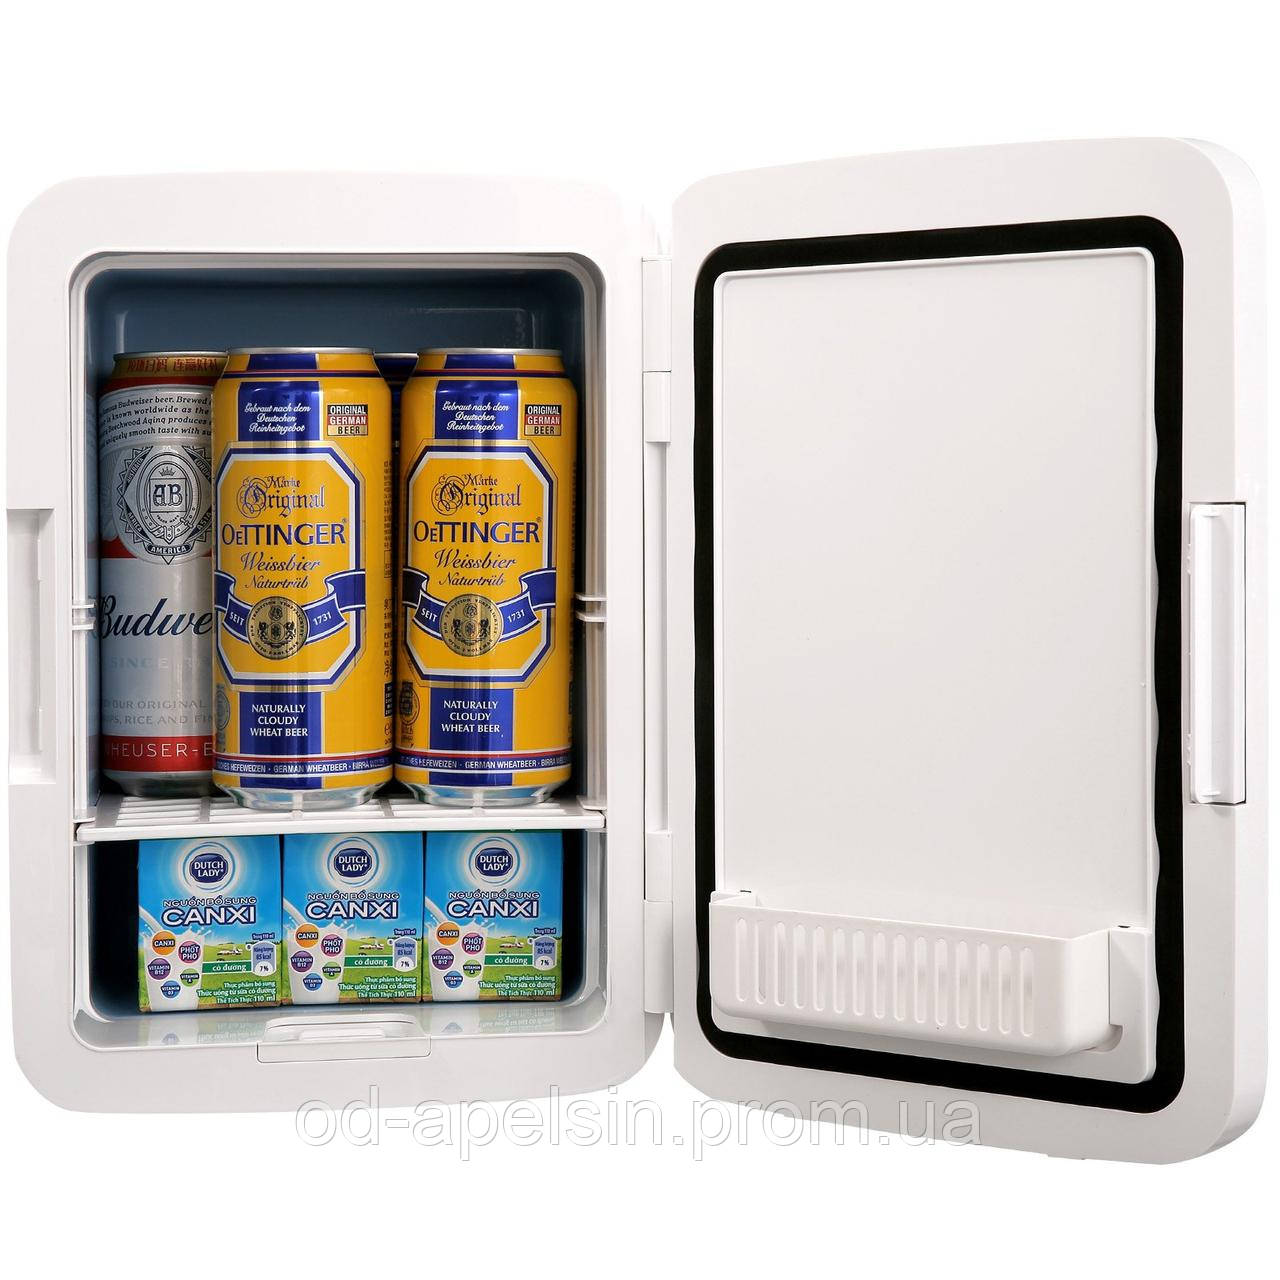 Міні-холодильник VEVOR 10 л / 12 банок, 2 в 1 невеликий холодильник з функцією охолодження та нагрівання, блокування компактного